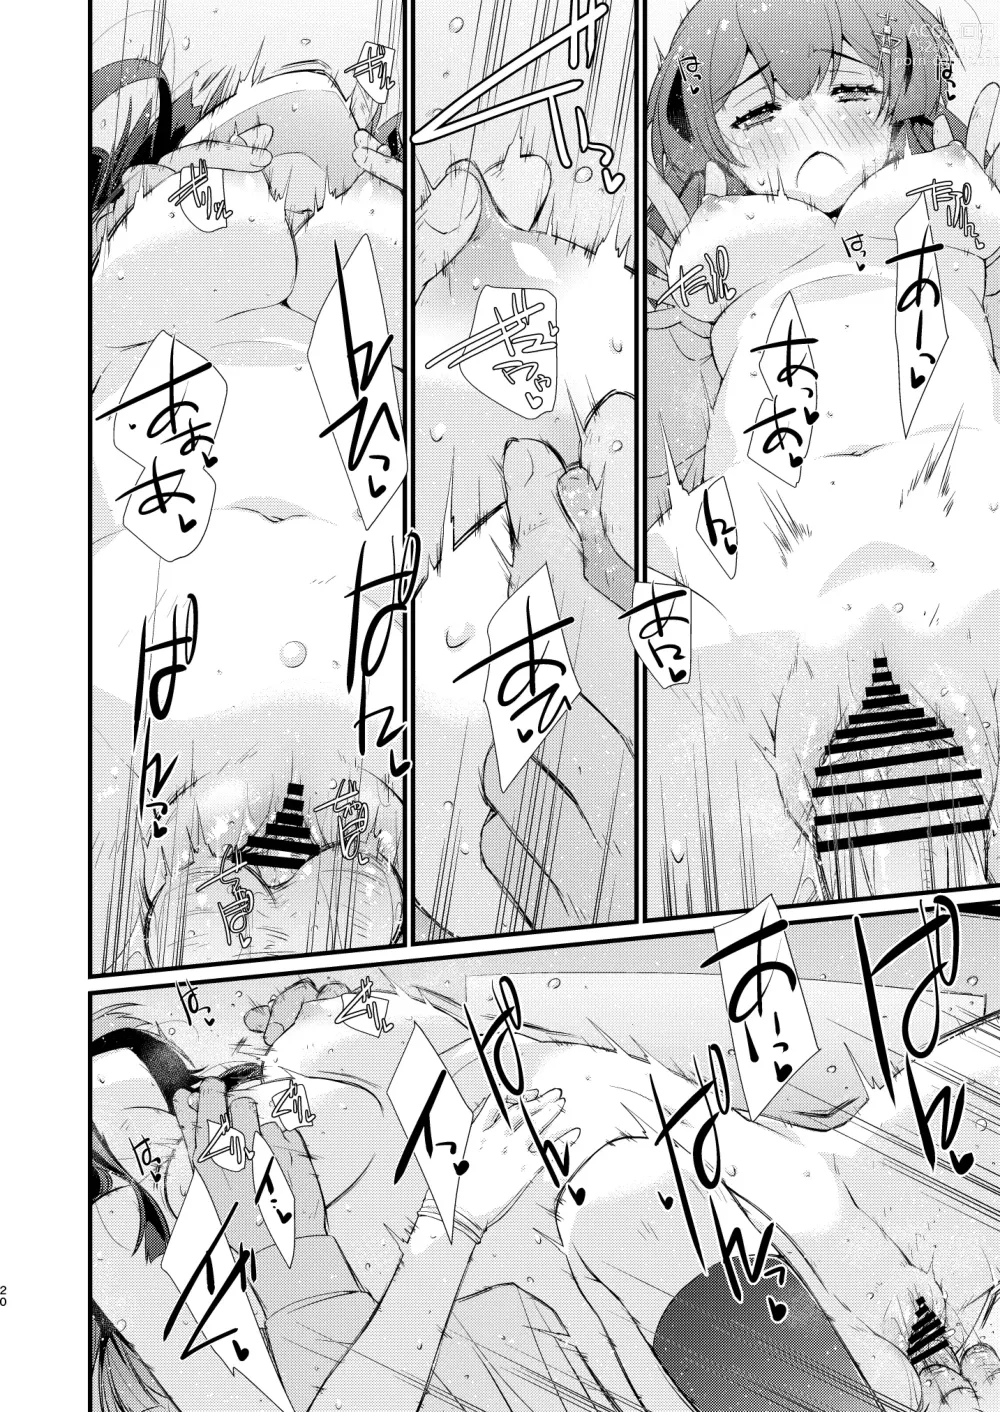 Page 19 of doujinshi Oyashio-chan no Koki Tebukuro.